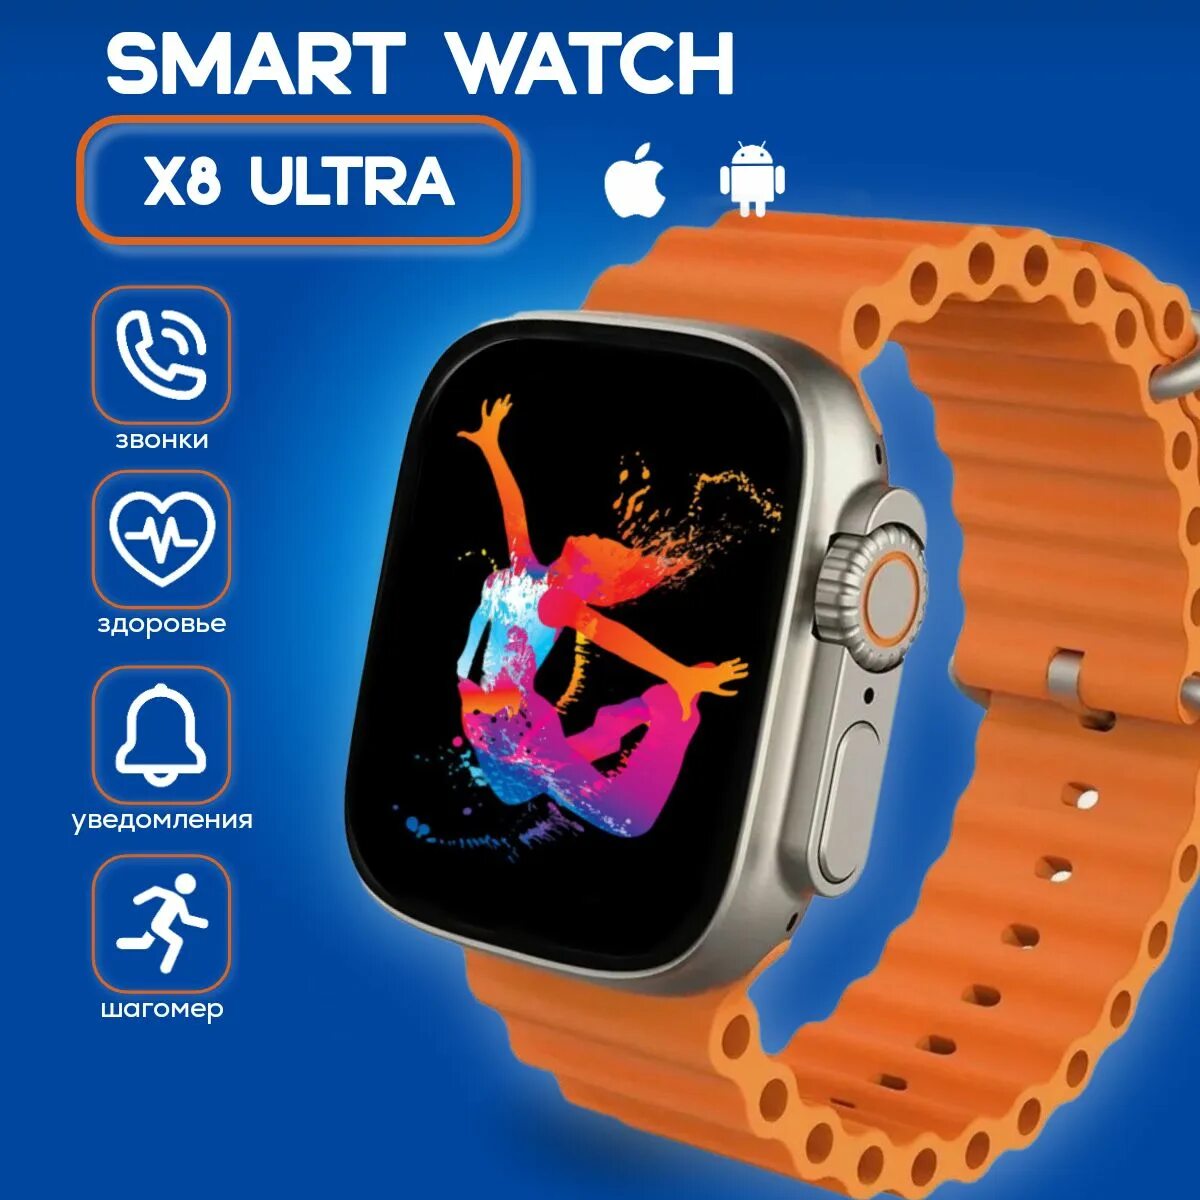 S8 ultra часы. X8 Ultra Smart watch. SMARTWATCH 8 Ultra. Смарт часы x8 Plus Ultra. Умные часы x8 Ultra смарт часы.